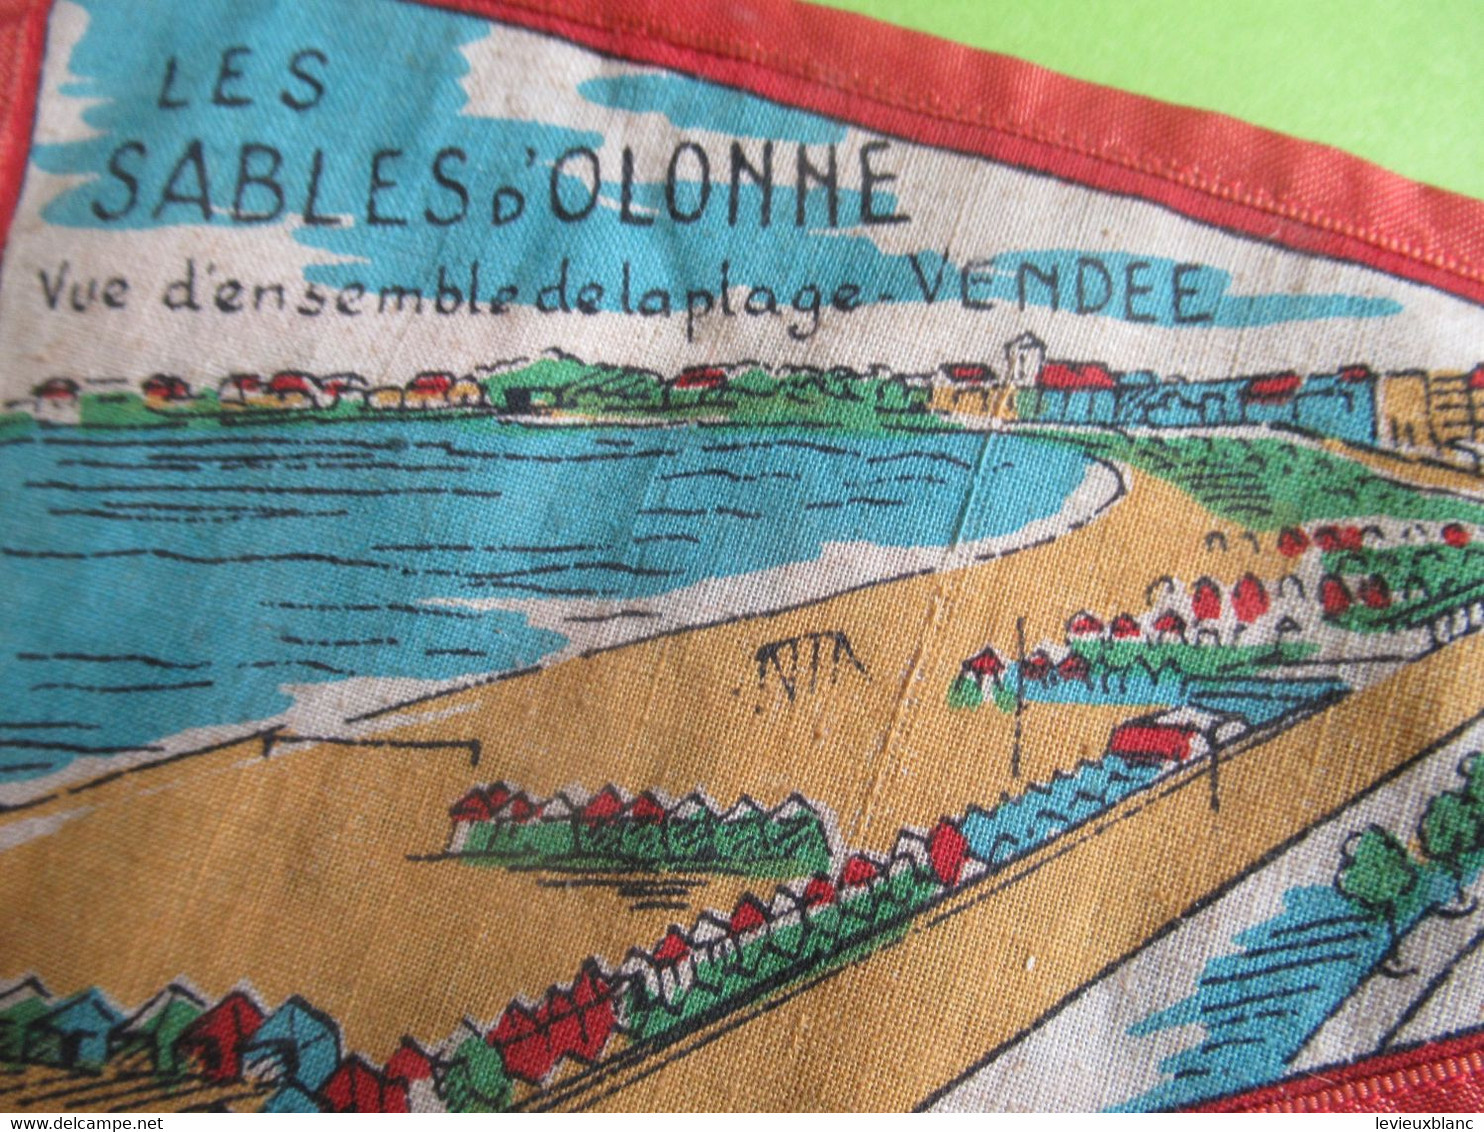 Fanion Touristique Ancien / FRANCE/Sables D'Olonne/ VENDEE/Vue D'ensemble De La Plage/ Vers 1950 - 1960      DFA61bis - Flaggen